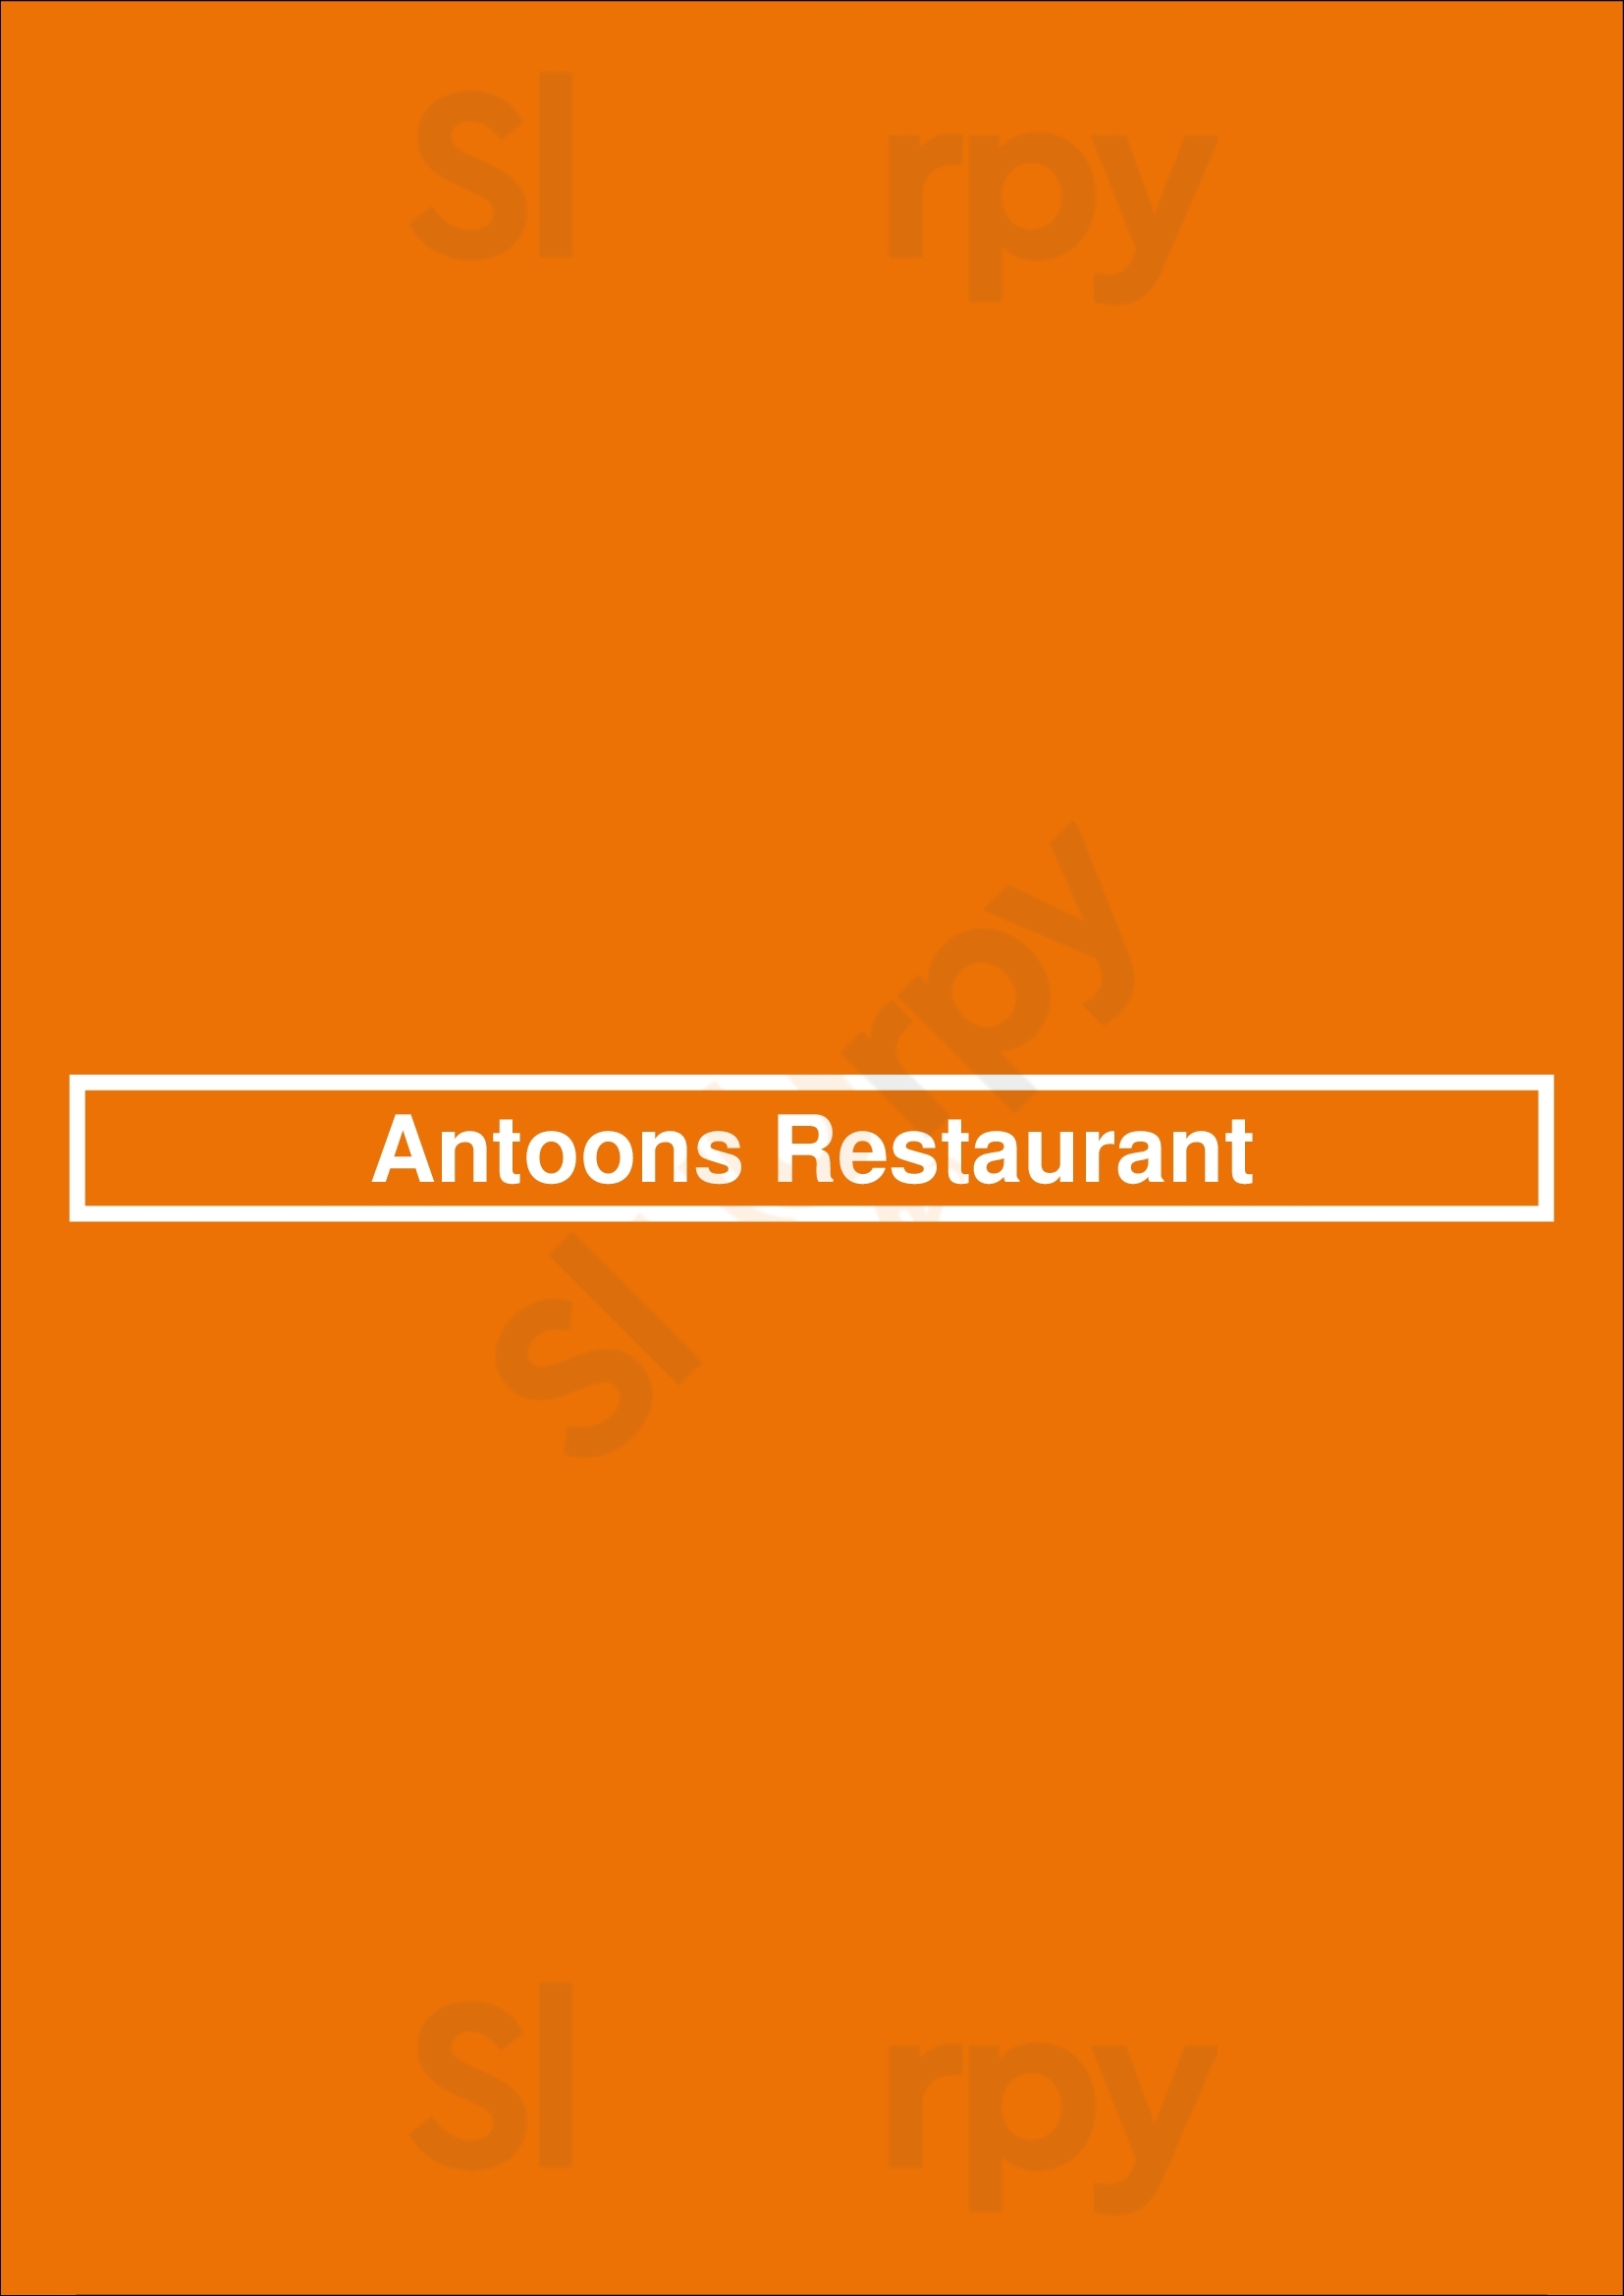 Antoons Restaurant Winterswijk Menu - 1